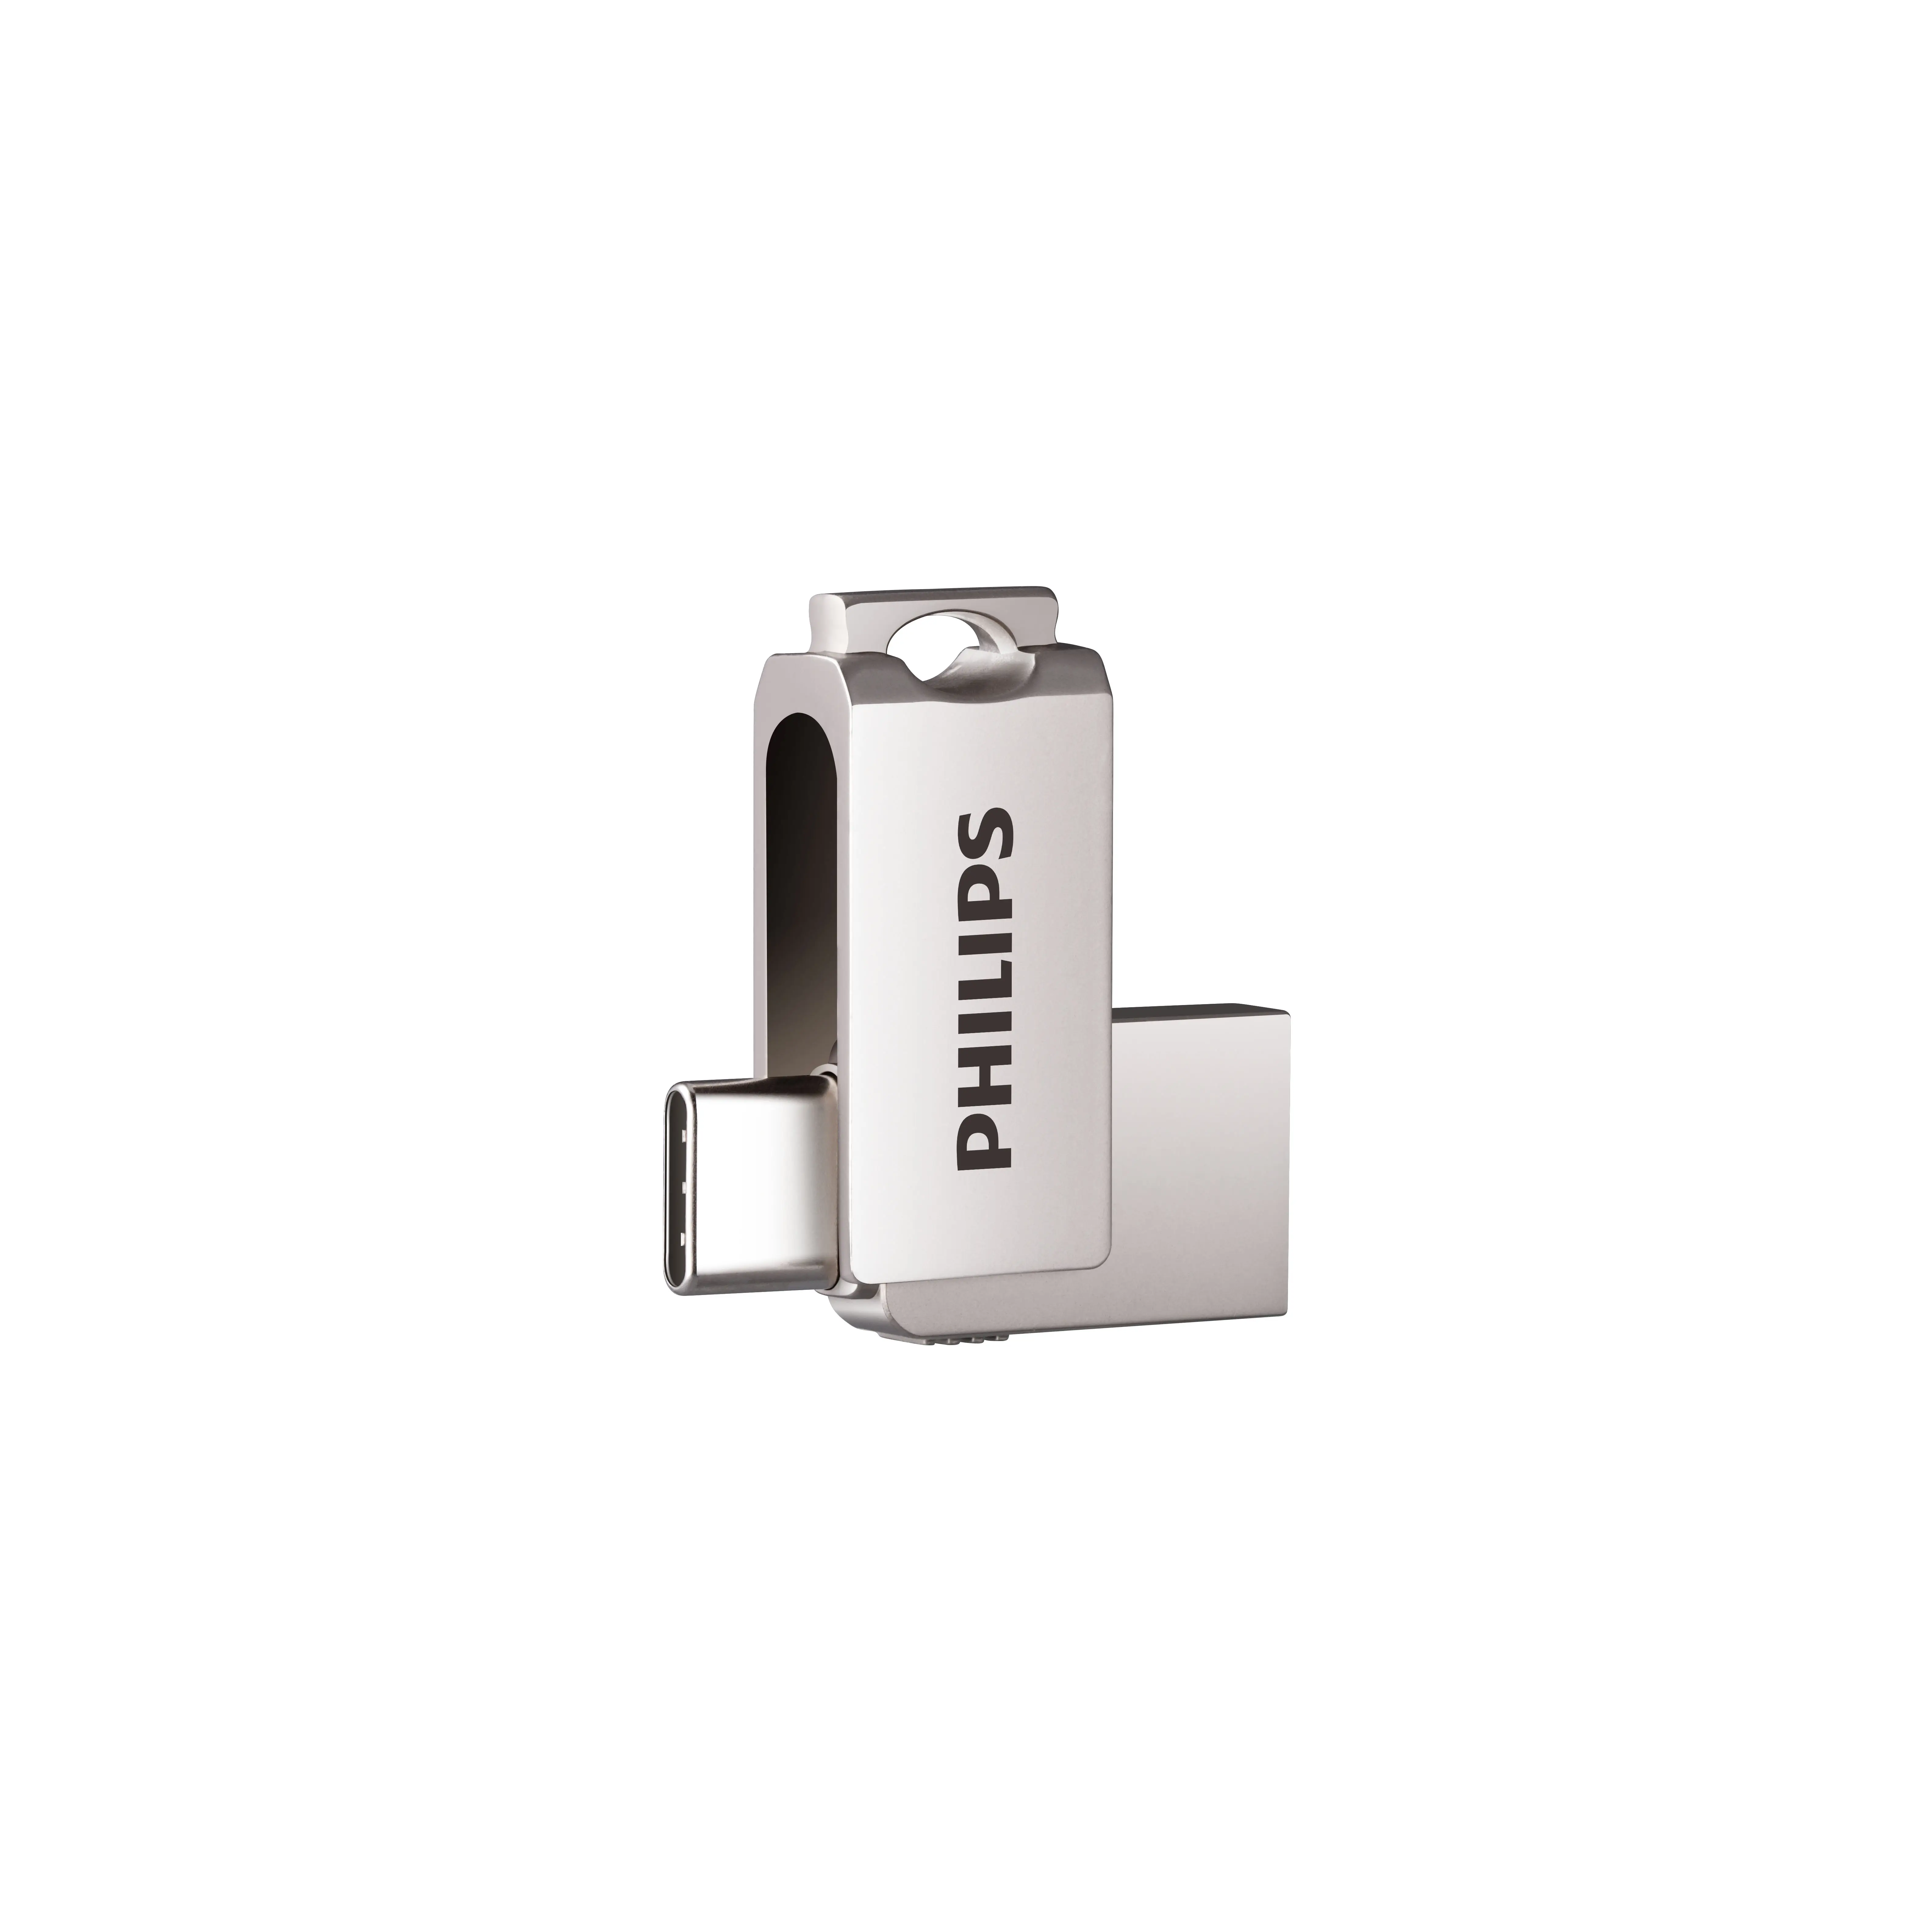 PHILIPS Hot Sale USB Stick 2.0 3.0 Mini Rotating Usb Drive 1GB 2GB 4GB 8GB 128GB 256GB Metal OTG Pendrive